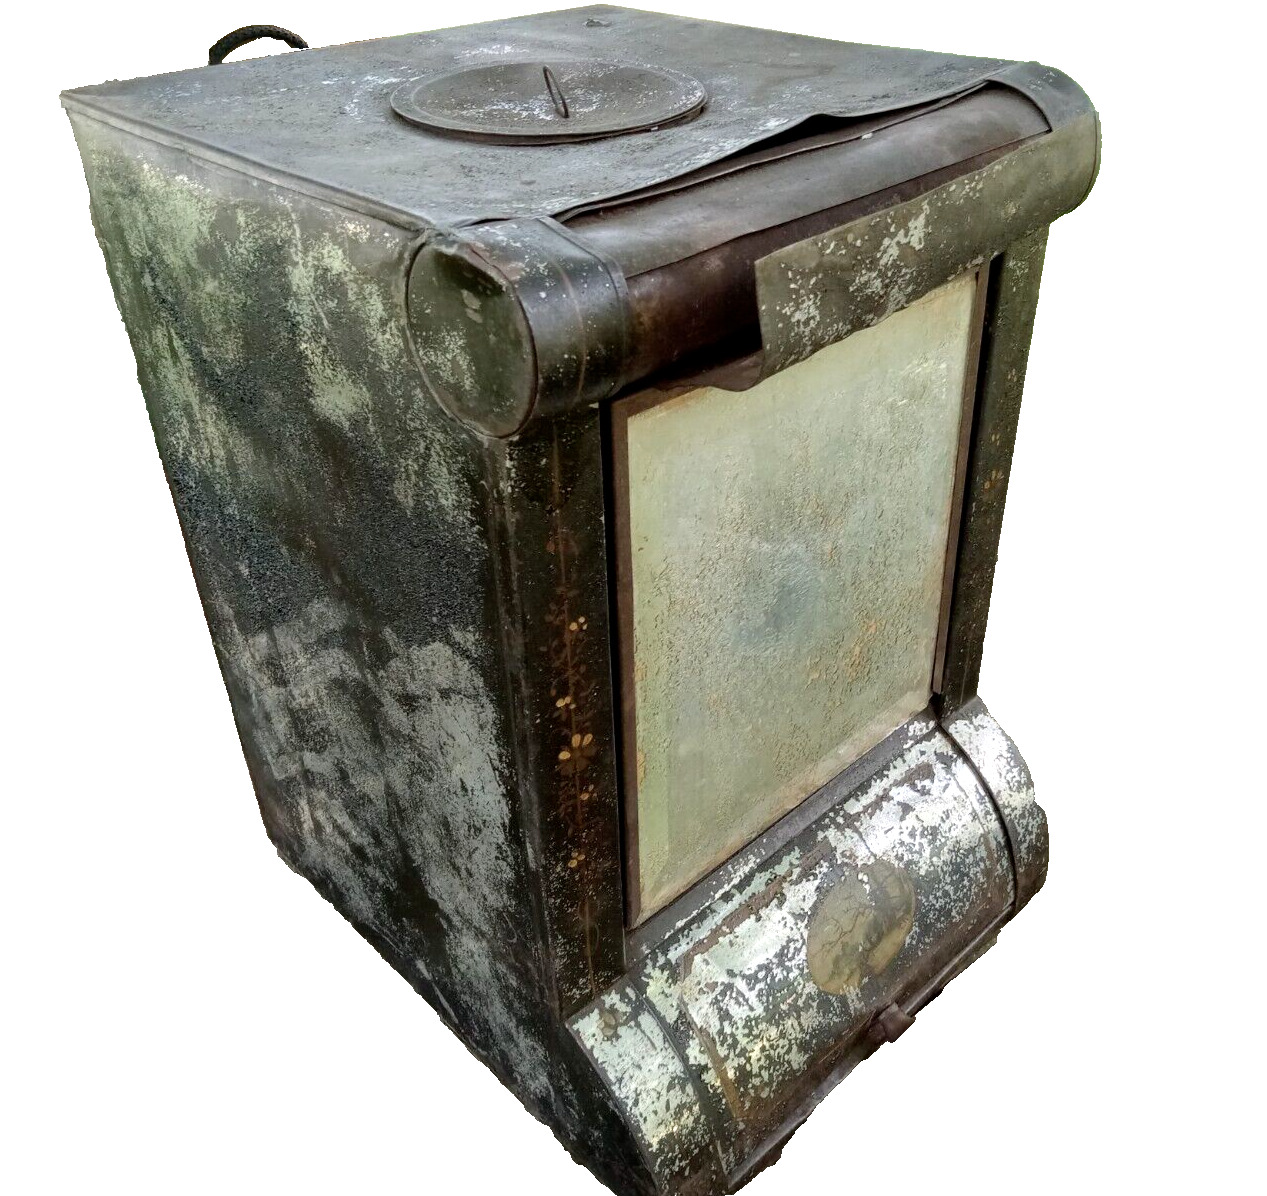 Original 1800's Toleware General Store Counter Top Tea Coffee Spice Tin Box Bin